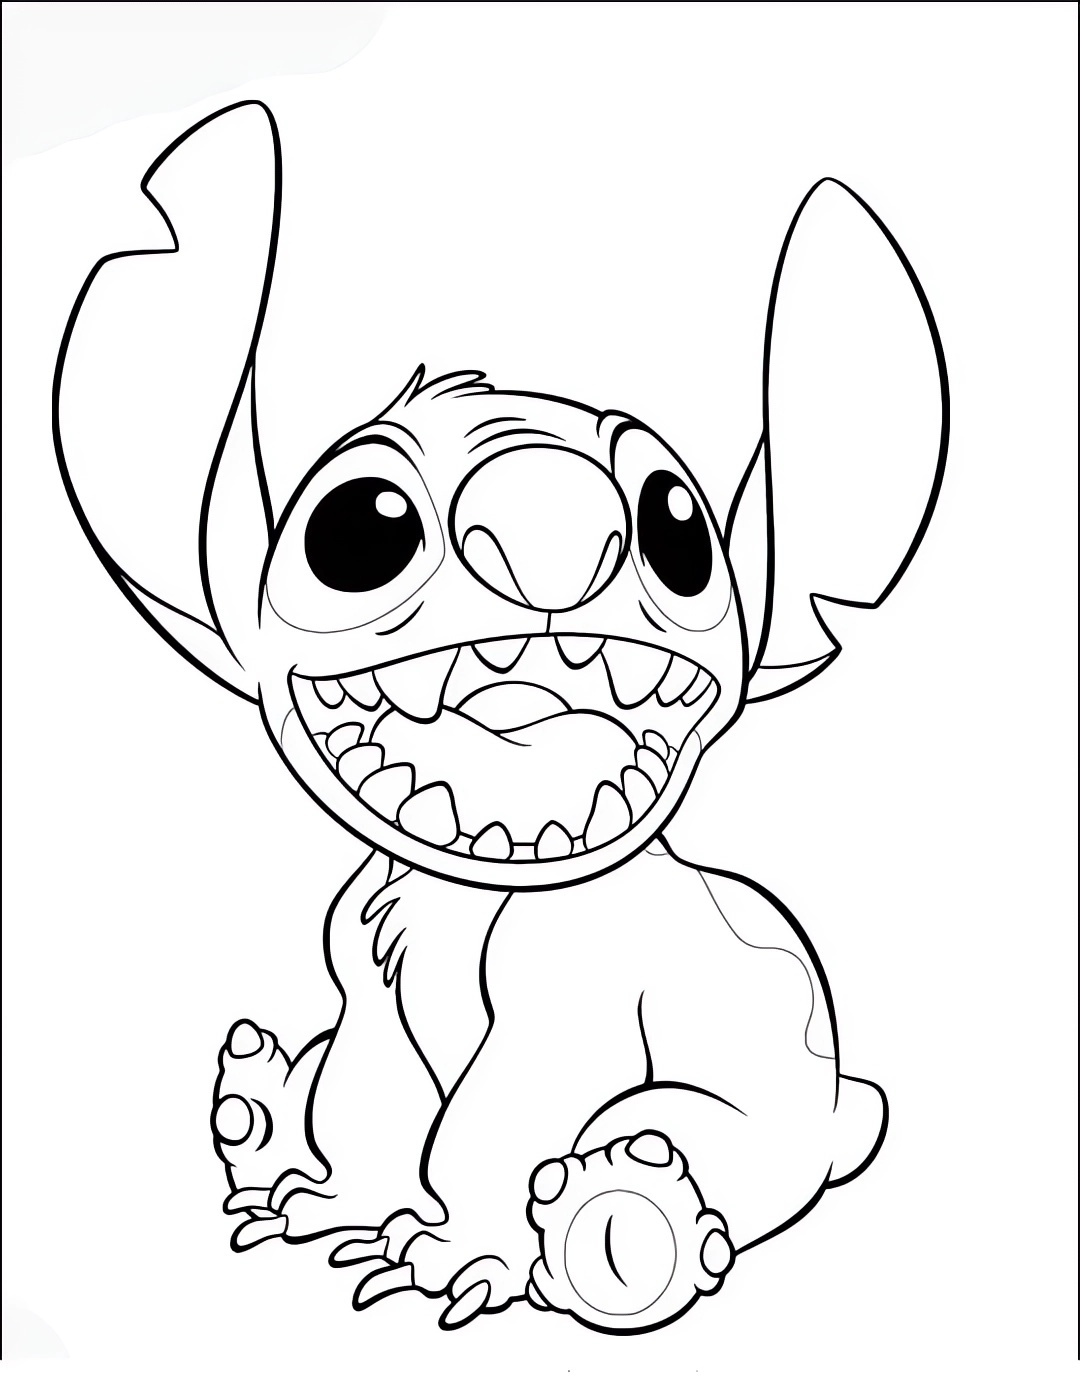 Lilo & Stitch 05 teckning av Lilo & Stitch att trycka och färglägga